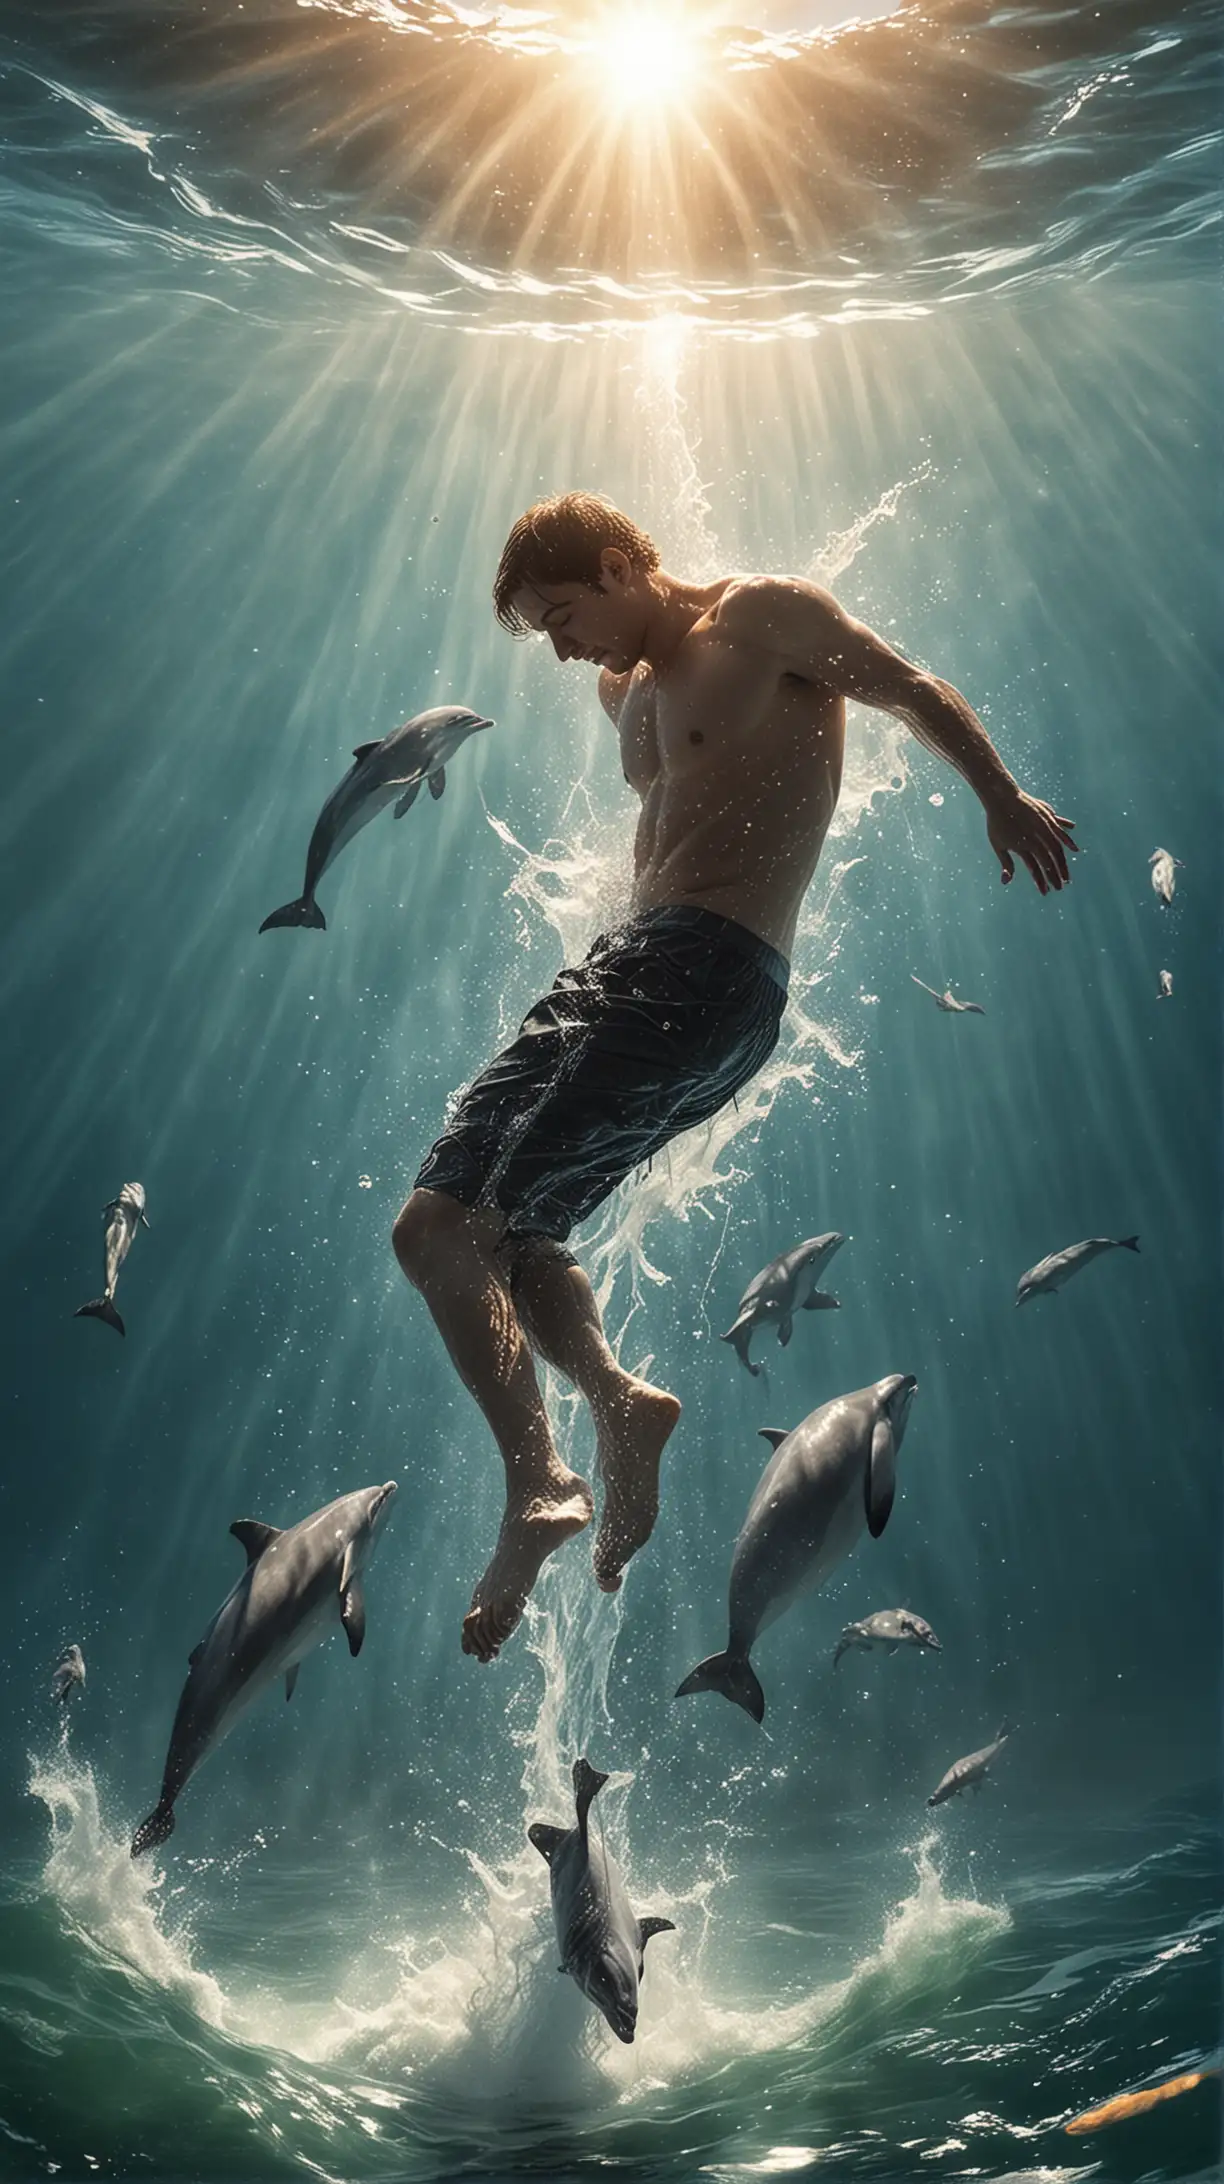 抹去图中的文字以及海豚，利用这张图的构图和光线，去表现一个掉入水中的人，他在逐渐下沉，但太阳光照在他的身上，他的身边围绕着鱼群，整体呈现出现实主义的风格。